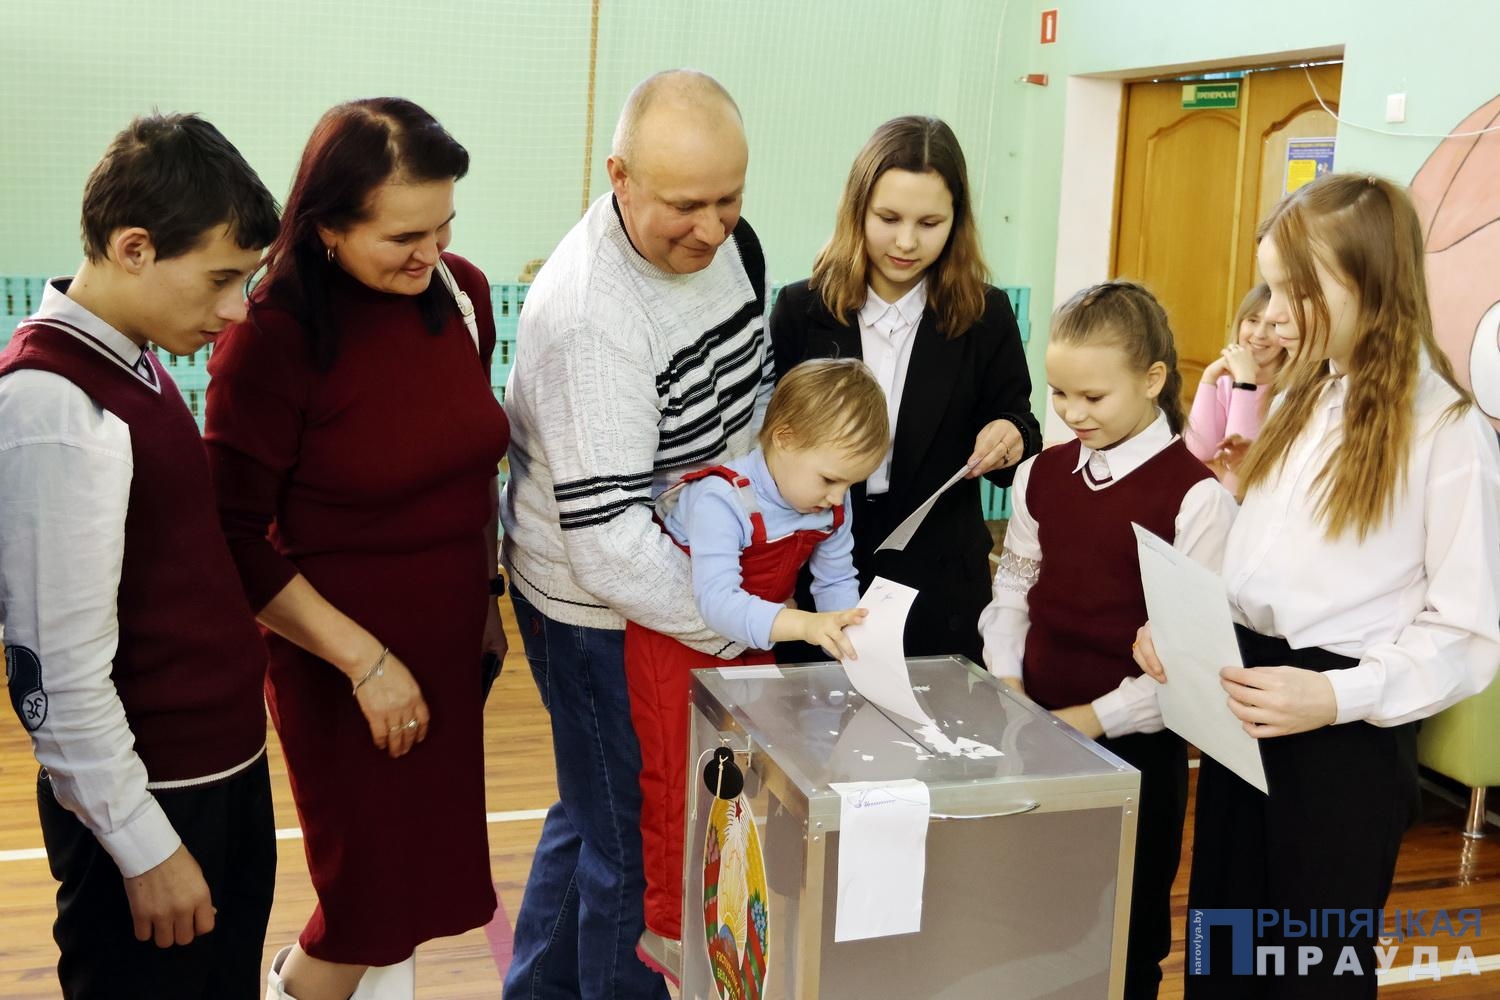 Многодетная семья Немаховых из Наровли — за светлое будущее страны и детей